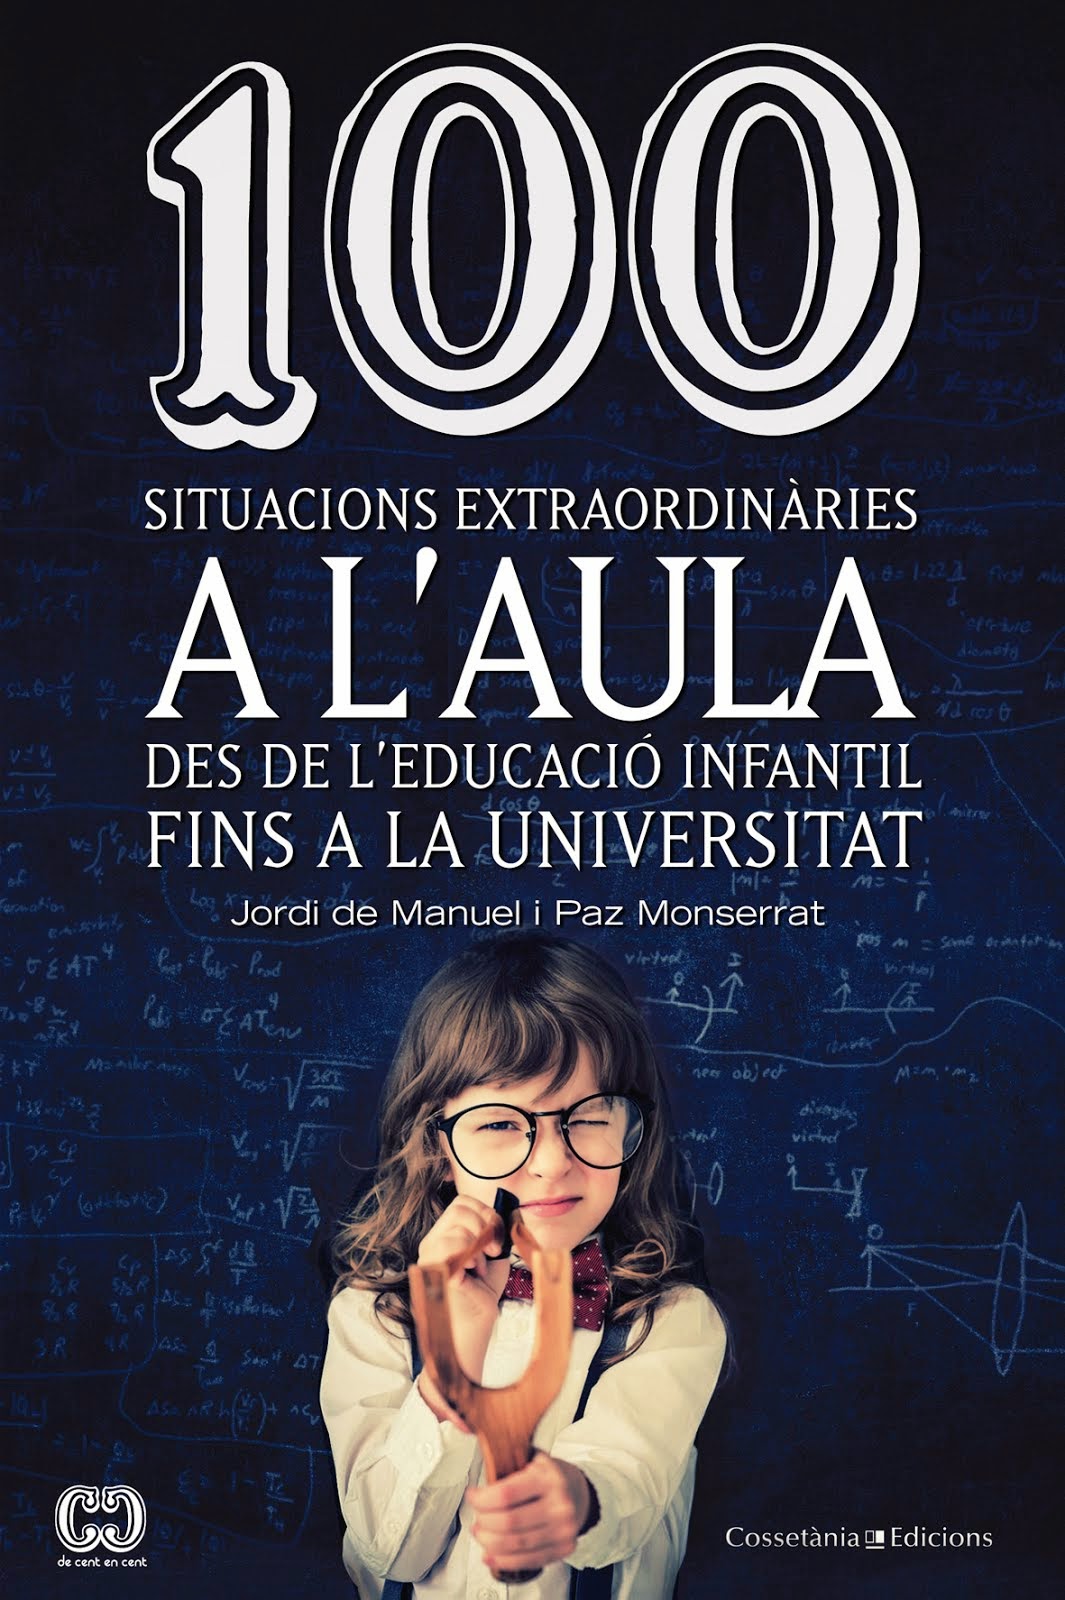 100 situacions extraordinàries a l'aula